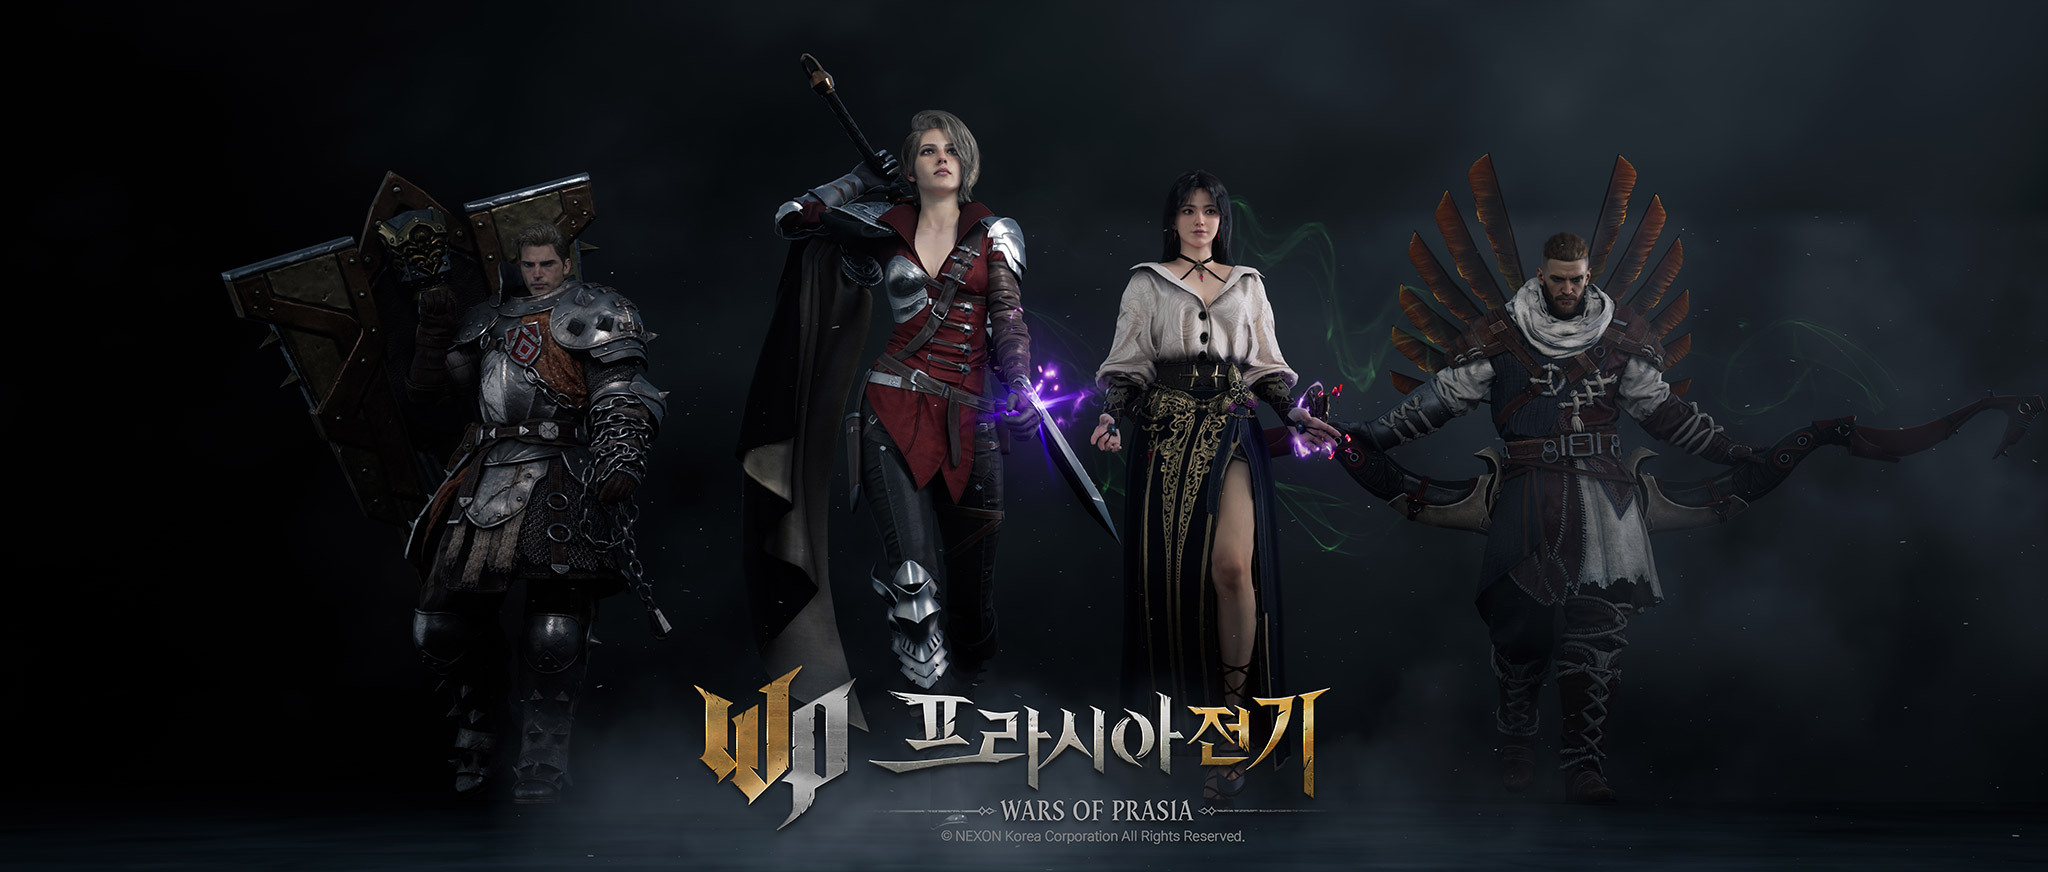 NEXON 大型 MMORPG《波拉西亚战记》预告 3 月 2 日于韩国开放预先创角插图6